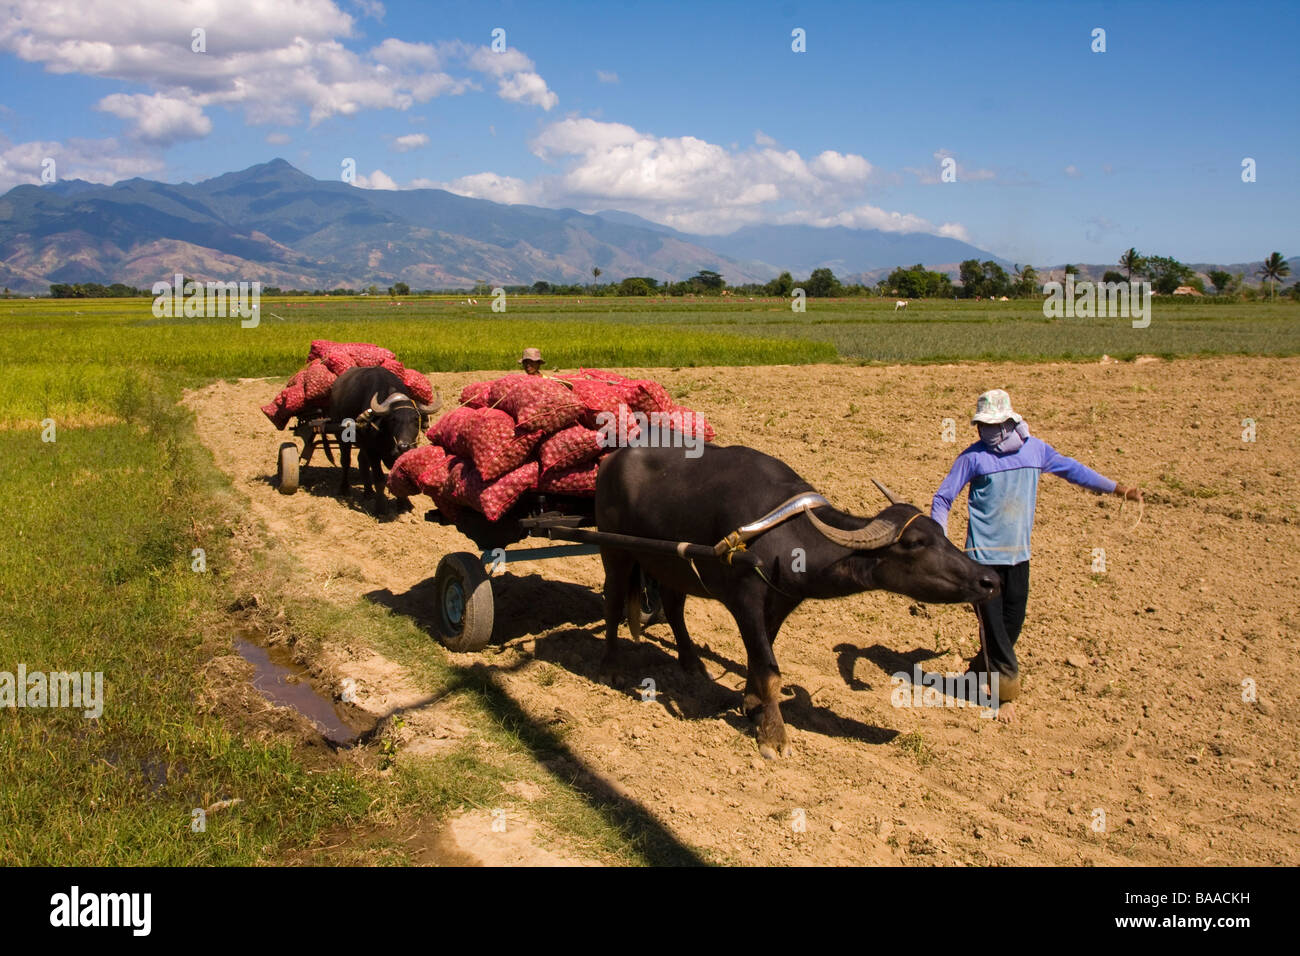 Un campesino llevando un animal tirar de una carga de cosecha de cebollas Foto de stock